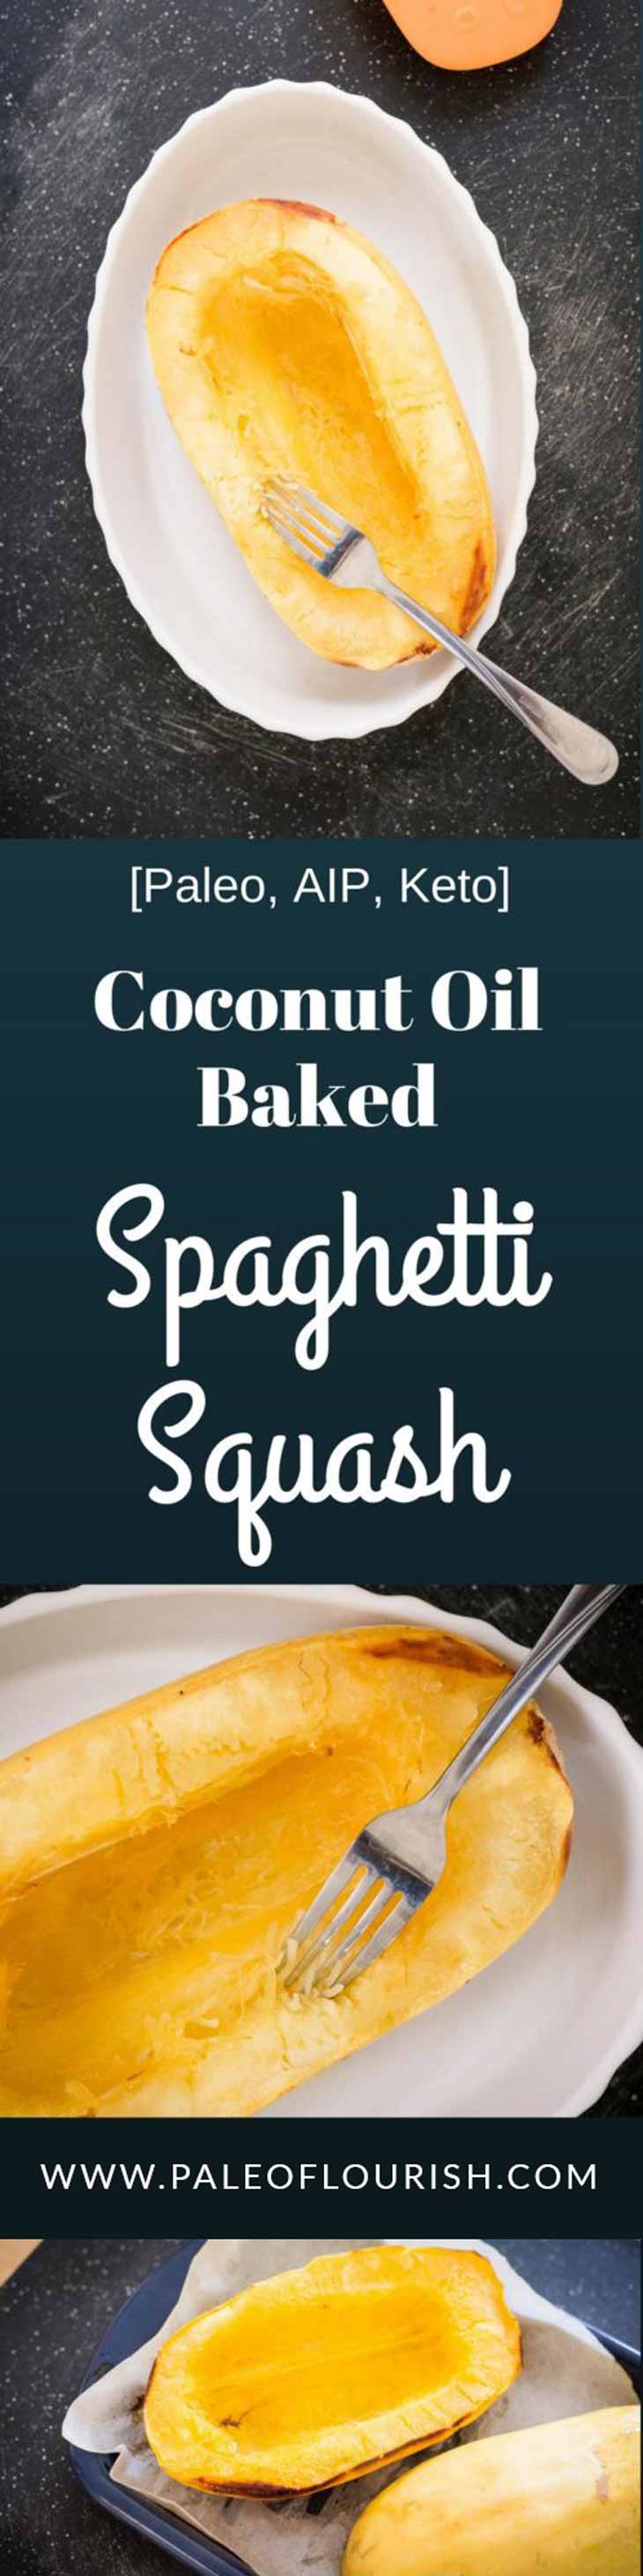 Coconut Oil Baked Spaghetti Squash Recipe [Paleo, AIP, Keto] #paleo #AIP #keto #recipes https://paleoflourish.com/coconut-oil-baked-spaghetti-squash-recipe